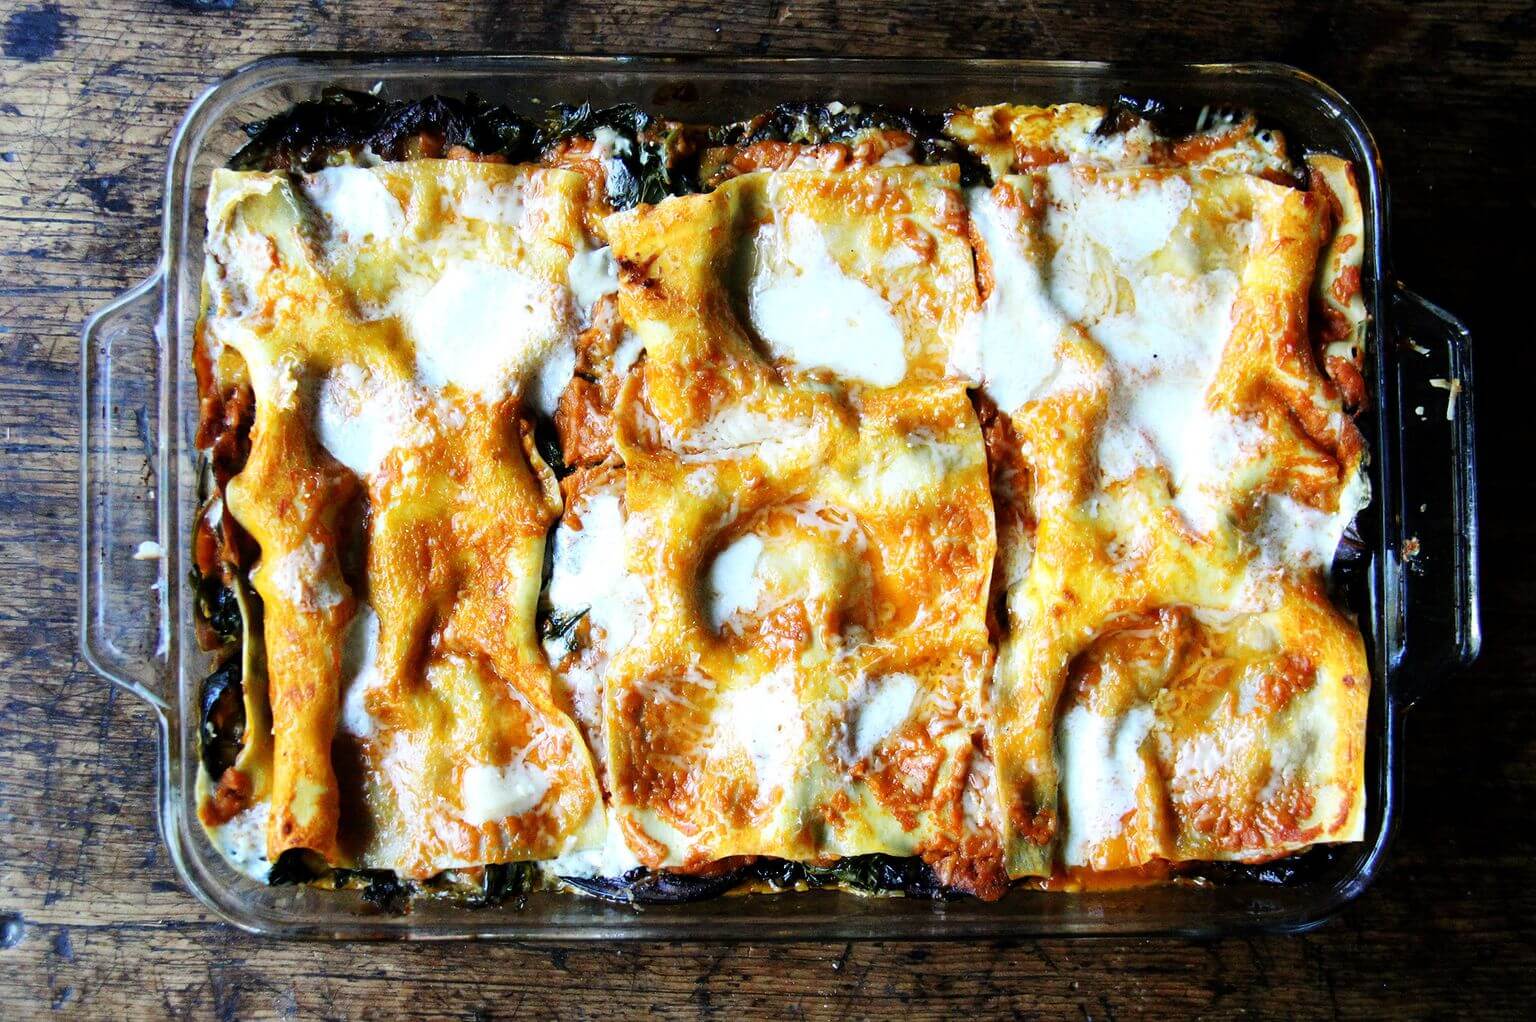 Just-baked roasted eggplant lasagna.